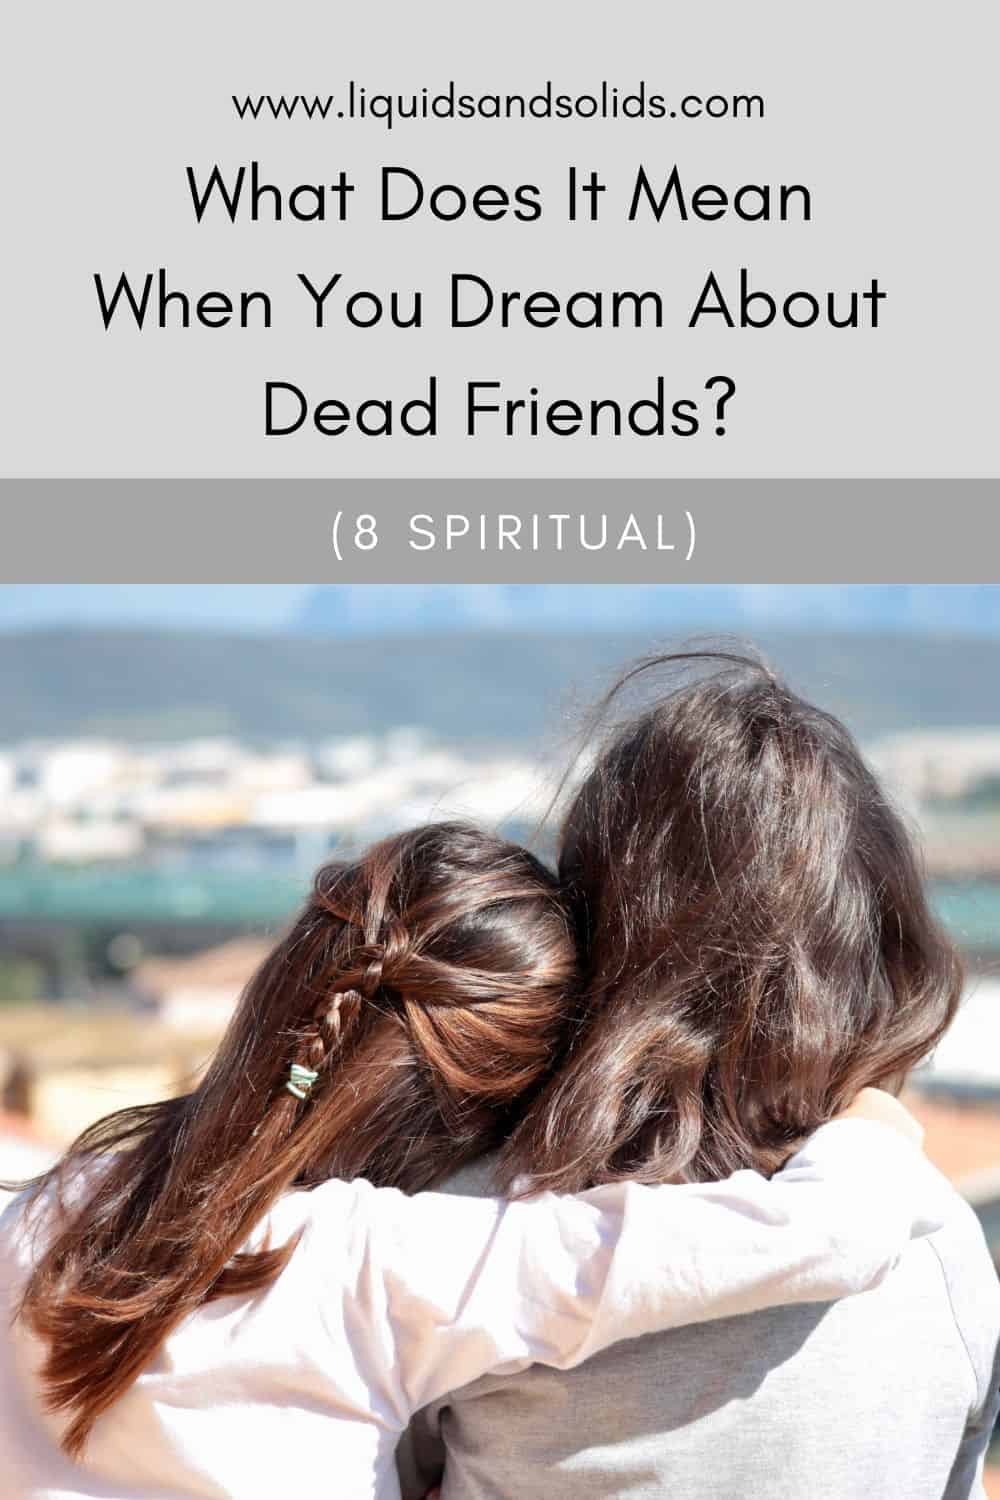  تحلم بالأصدقاء الميتين؟ (8 معاني روحية)